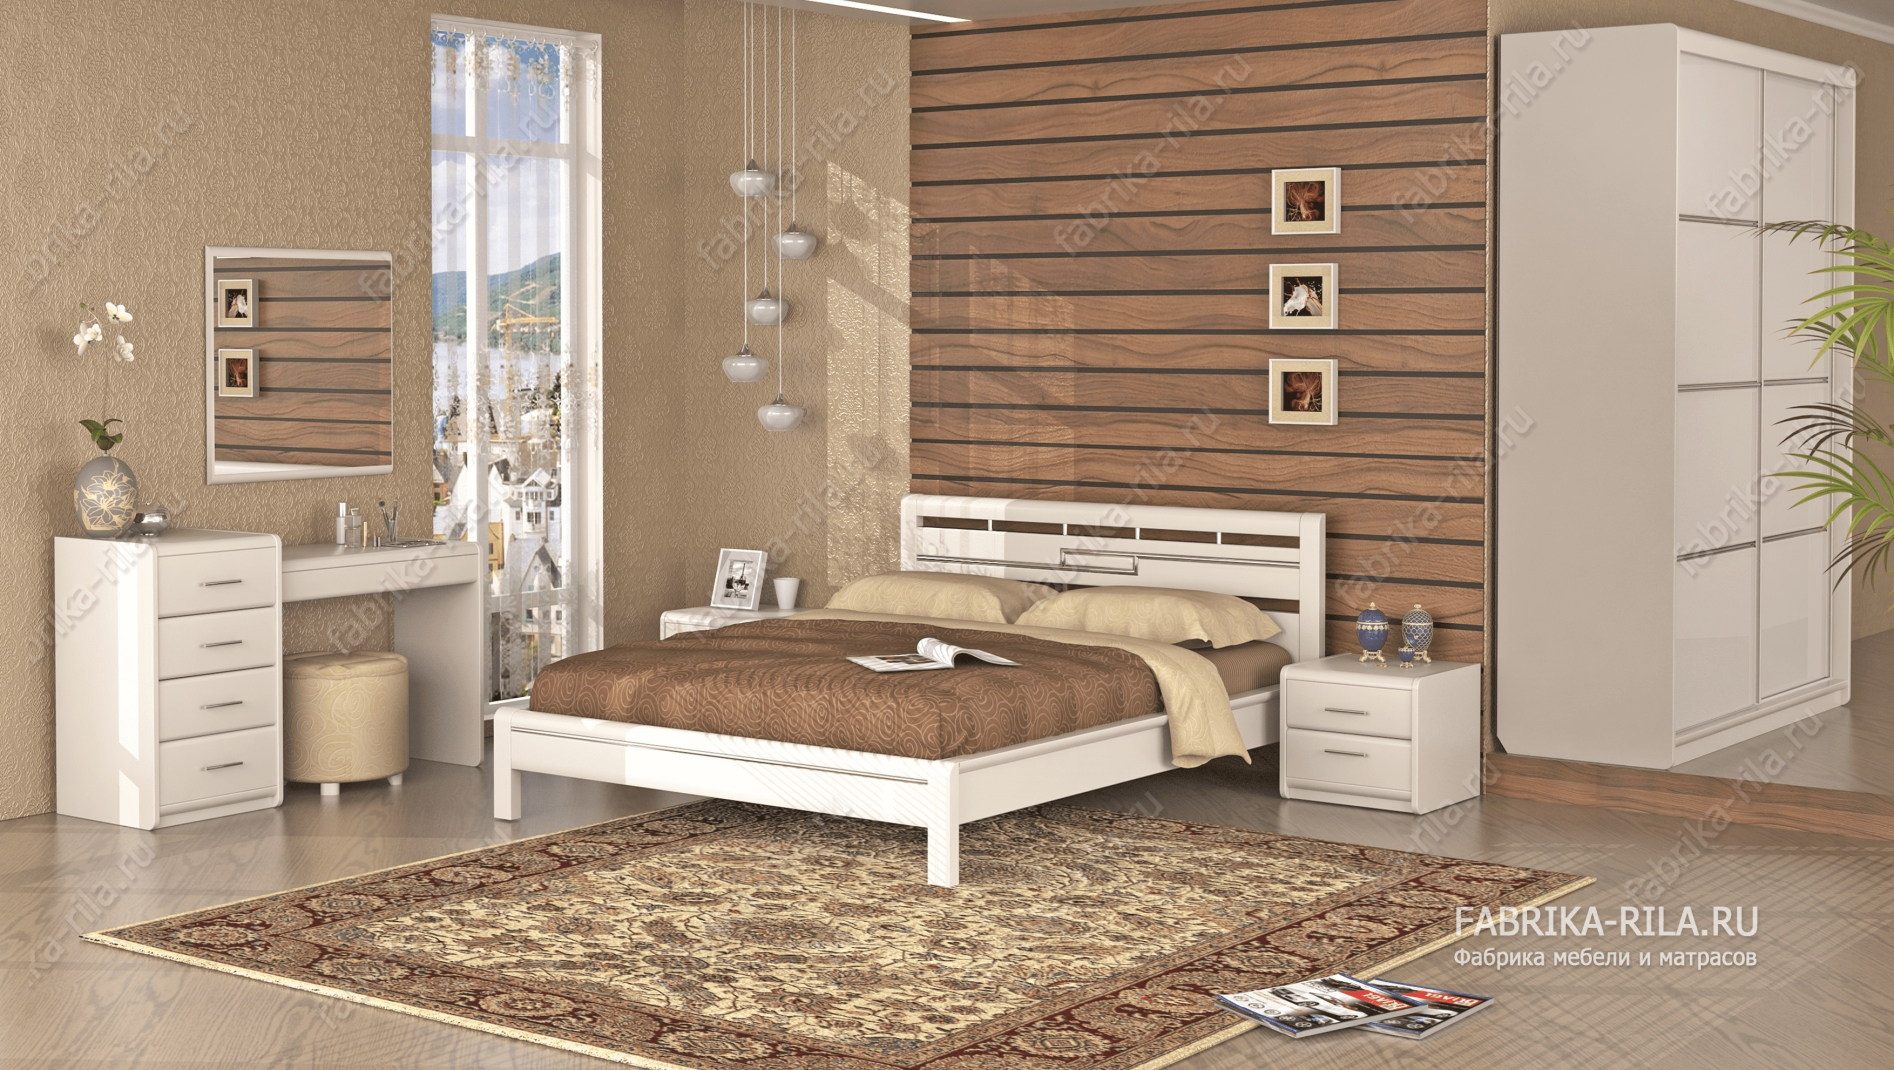 Кровать Okaeri 4 — 160x200 см. из сосны